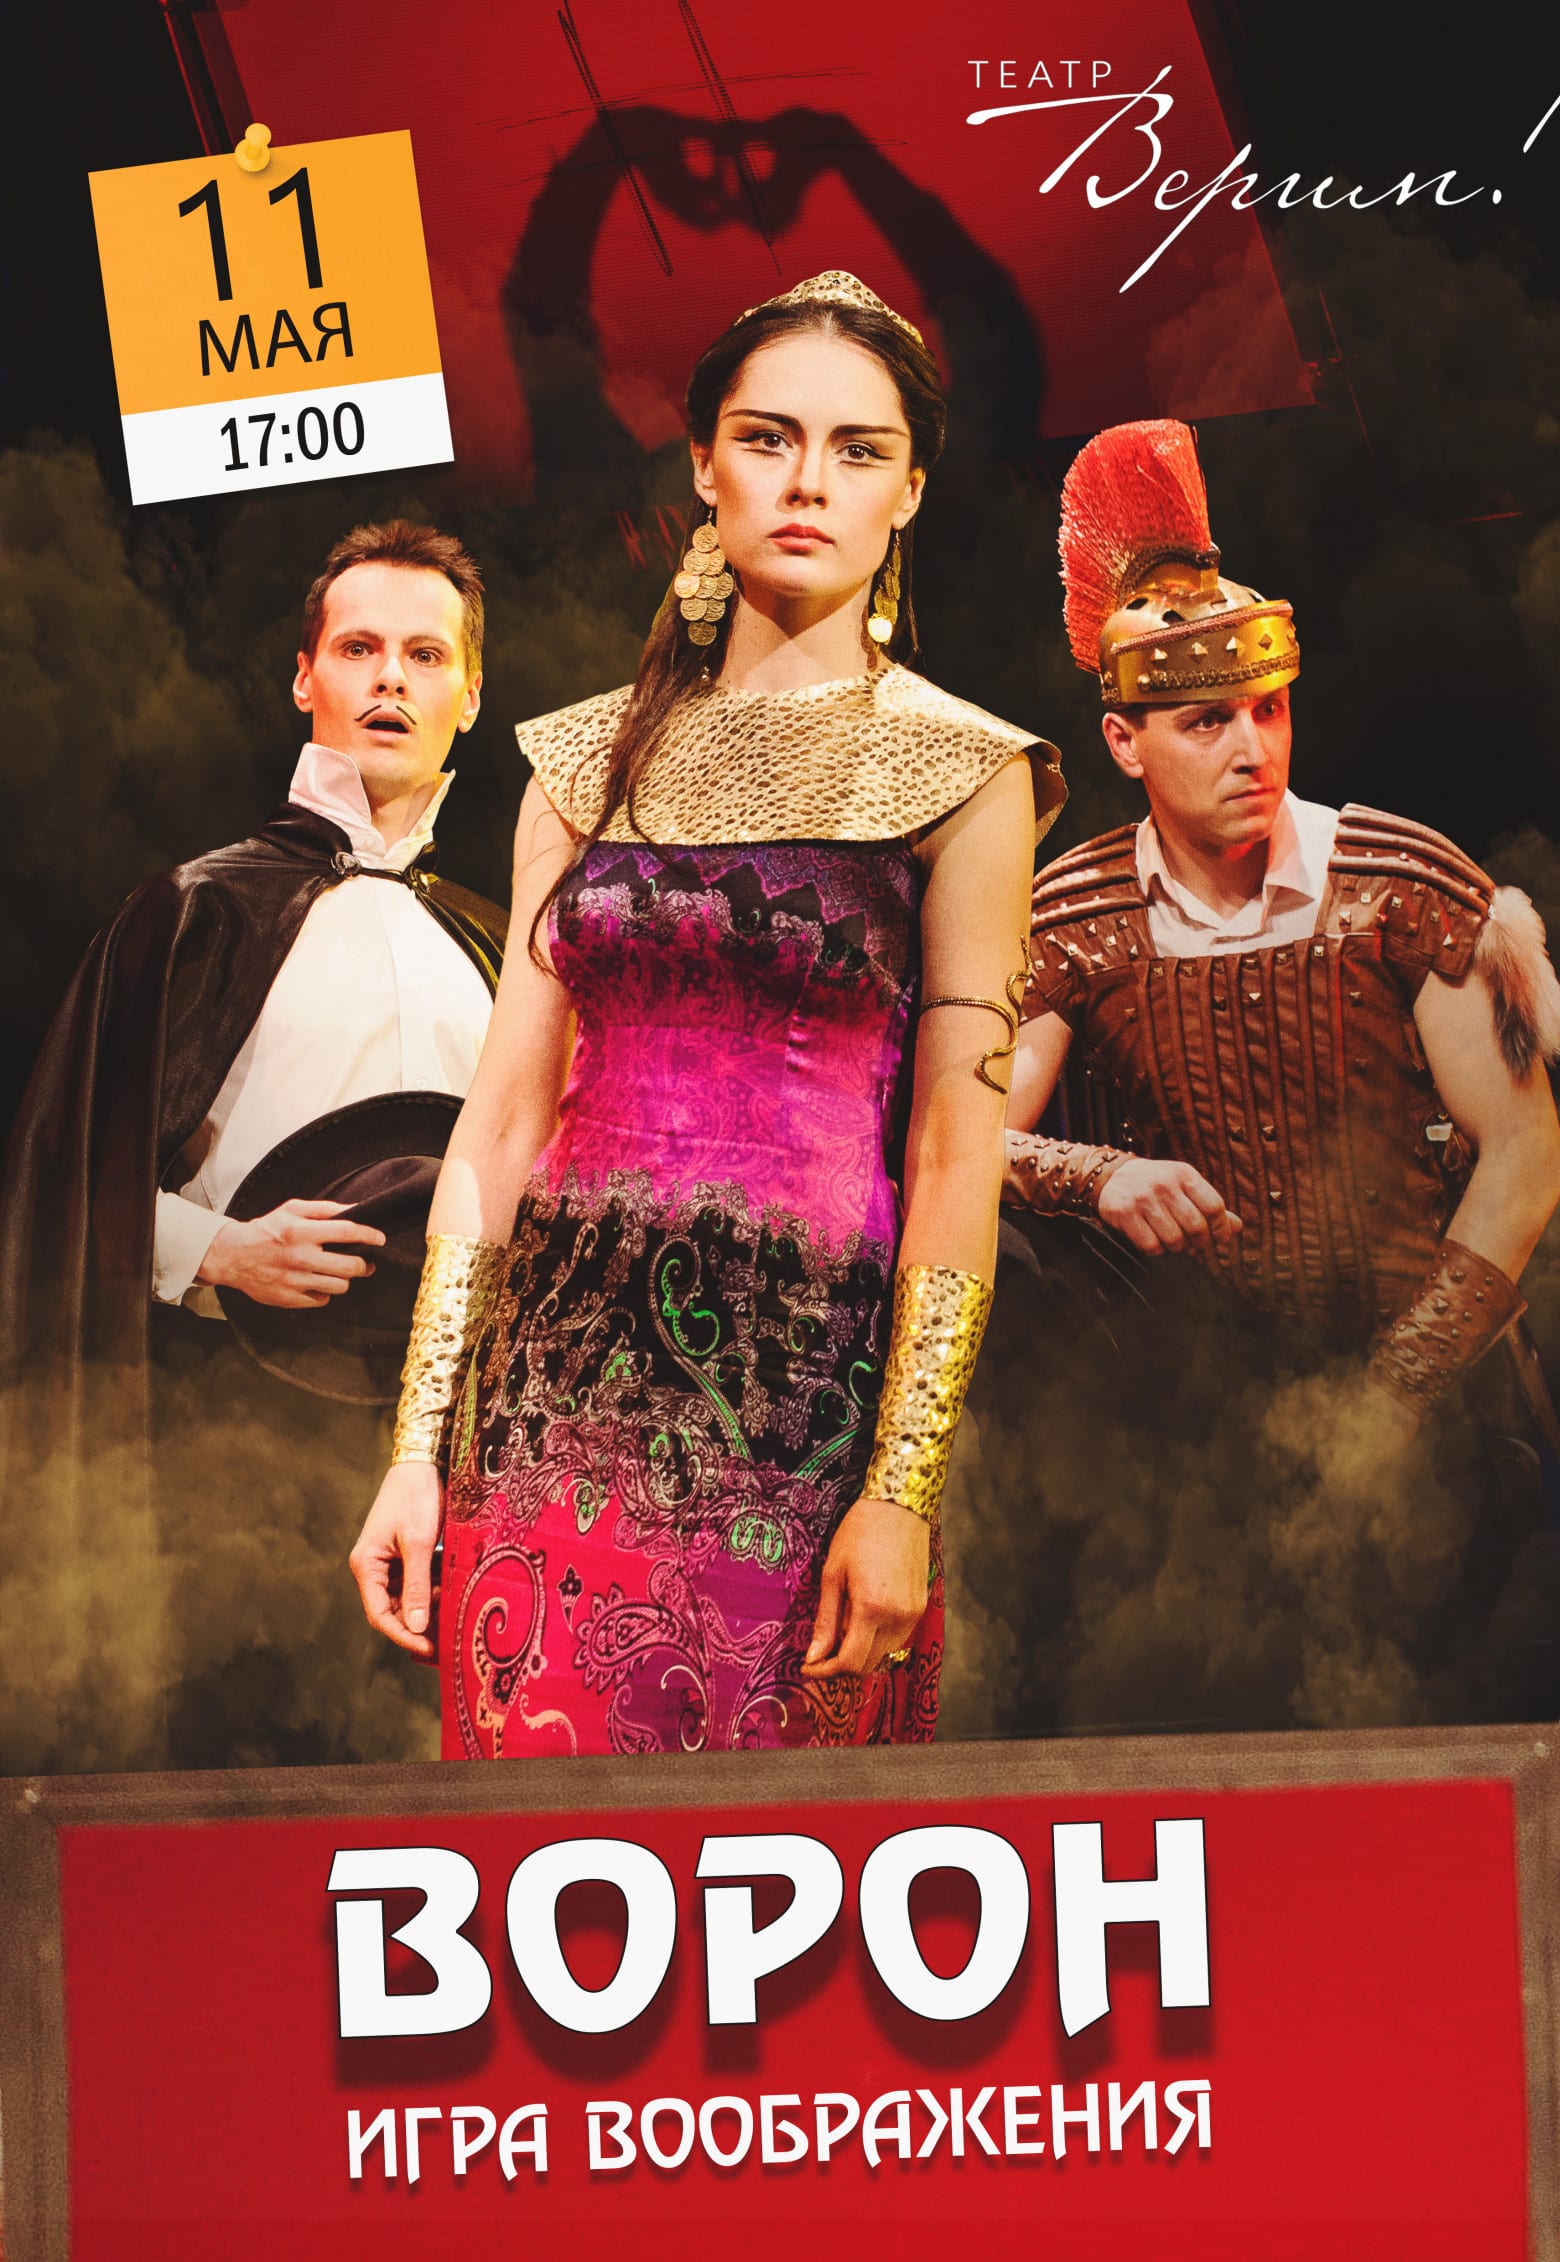 Театр Верим - Ворон Днепр, 11.05.2019, цена, купить билеты. Афиша Днепра